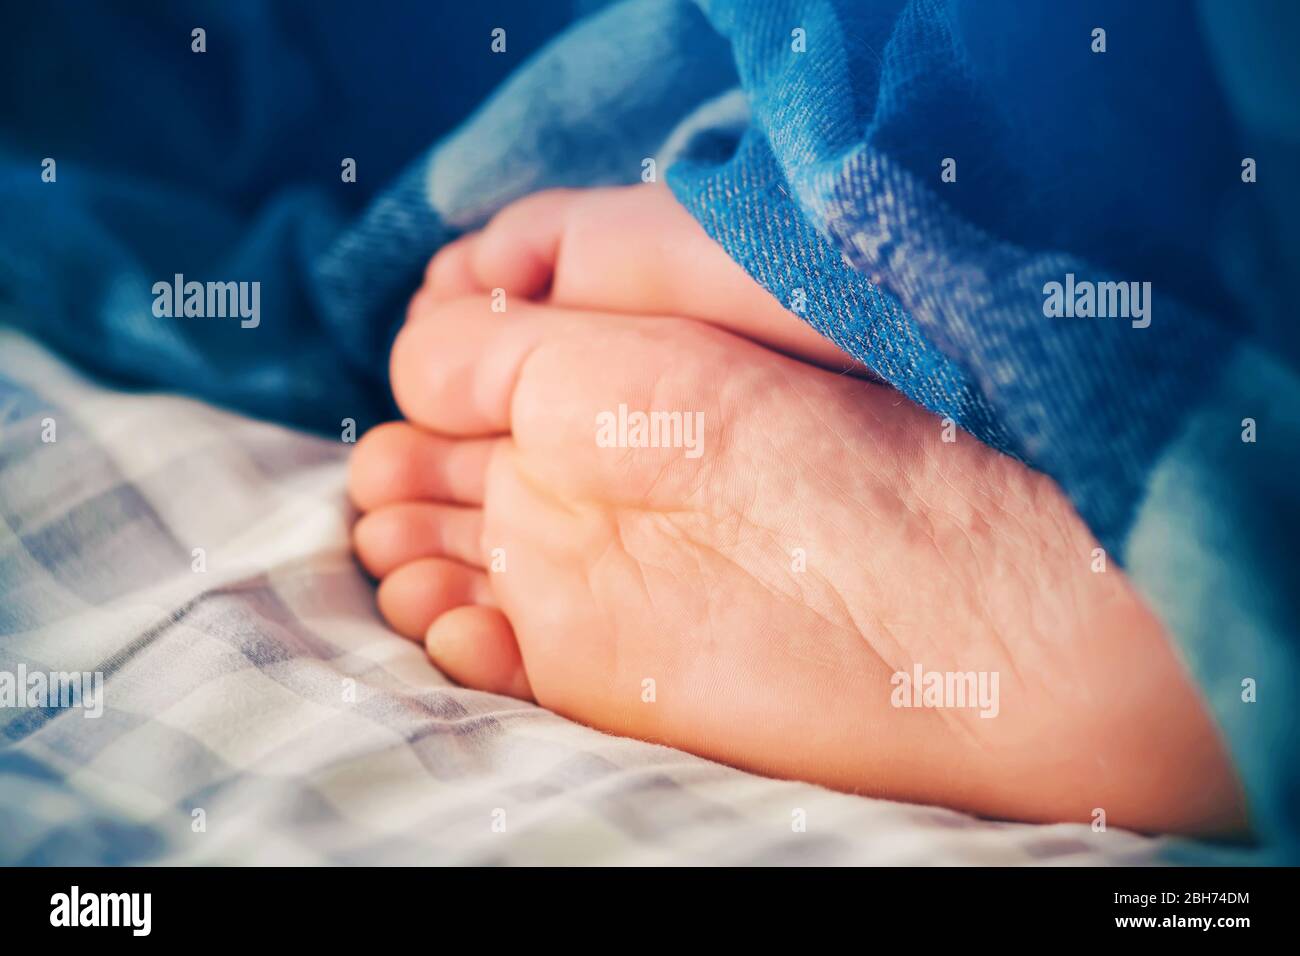 Le gambe di un uomo che dorme giacciono su un lenzuolo a scacchi sul letto, coperto da una coperta blu brillante e illuminato dalla luce al mattino. Foto Stock